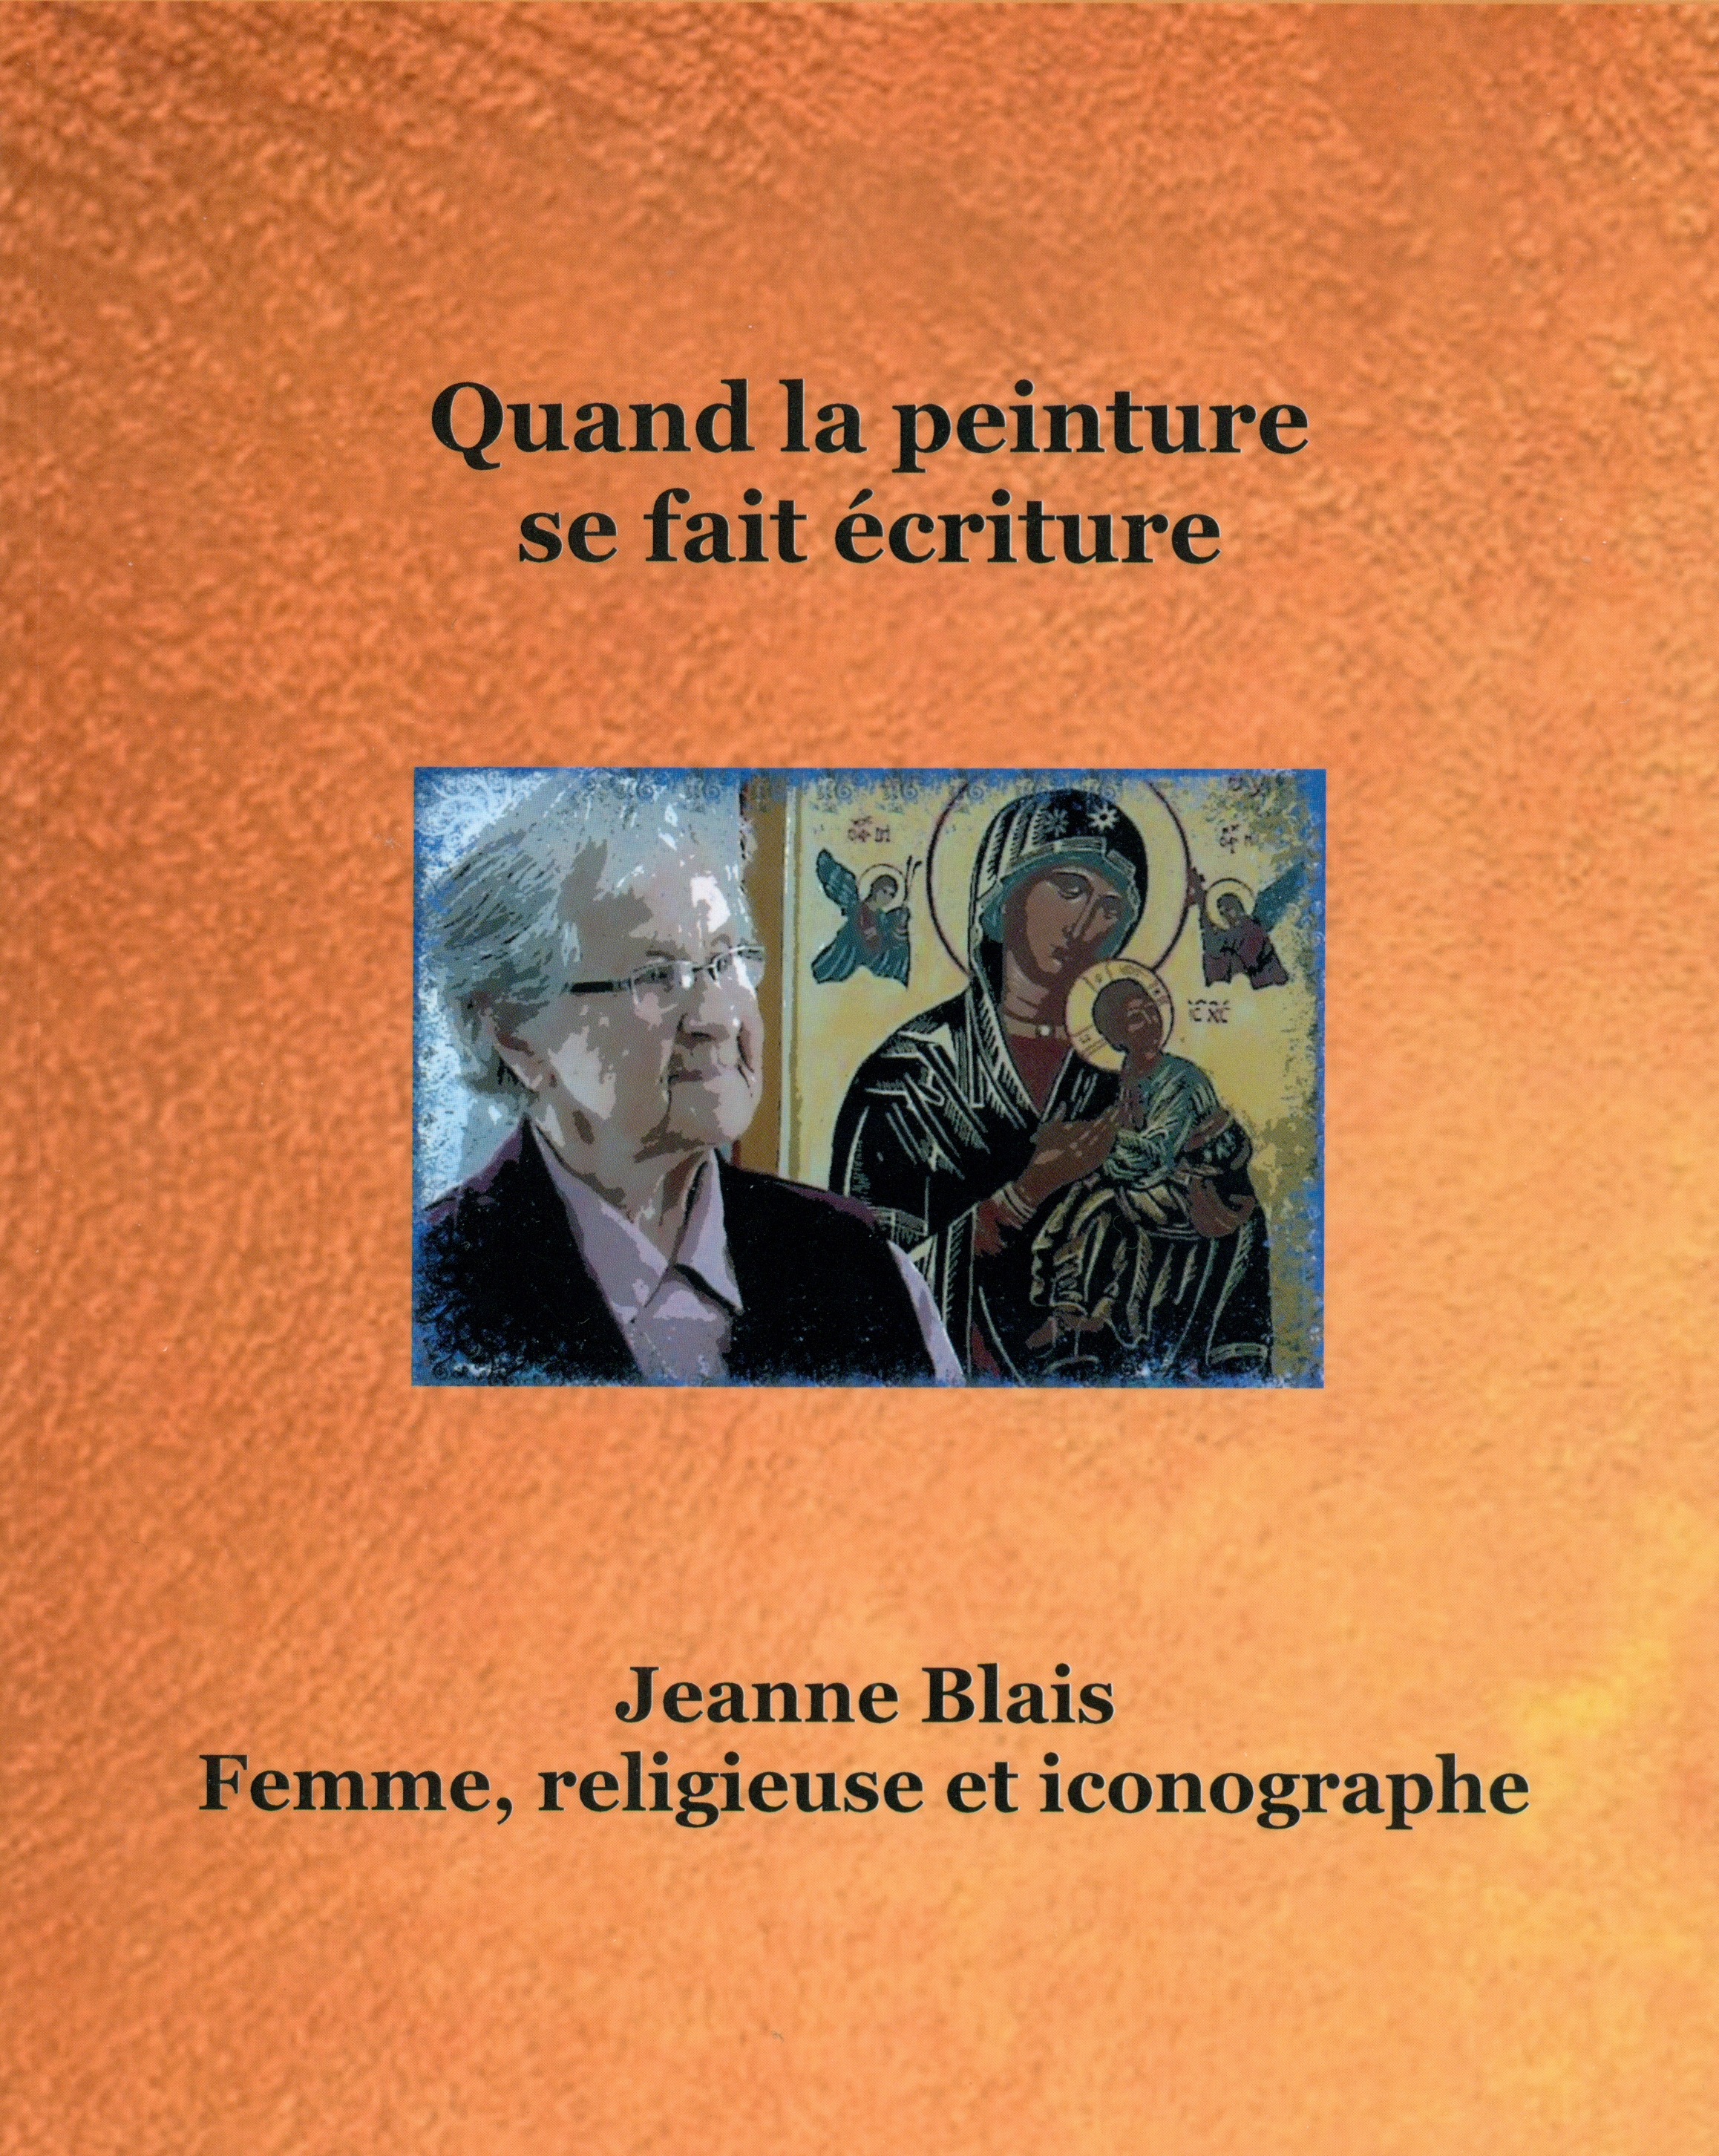 Livre de Jeanne Blais